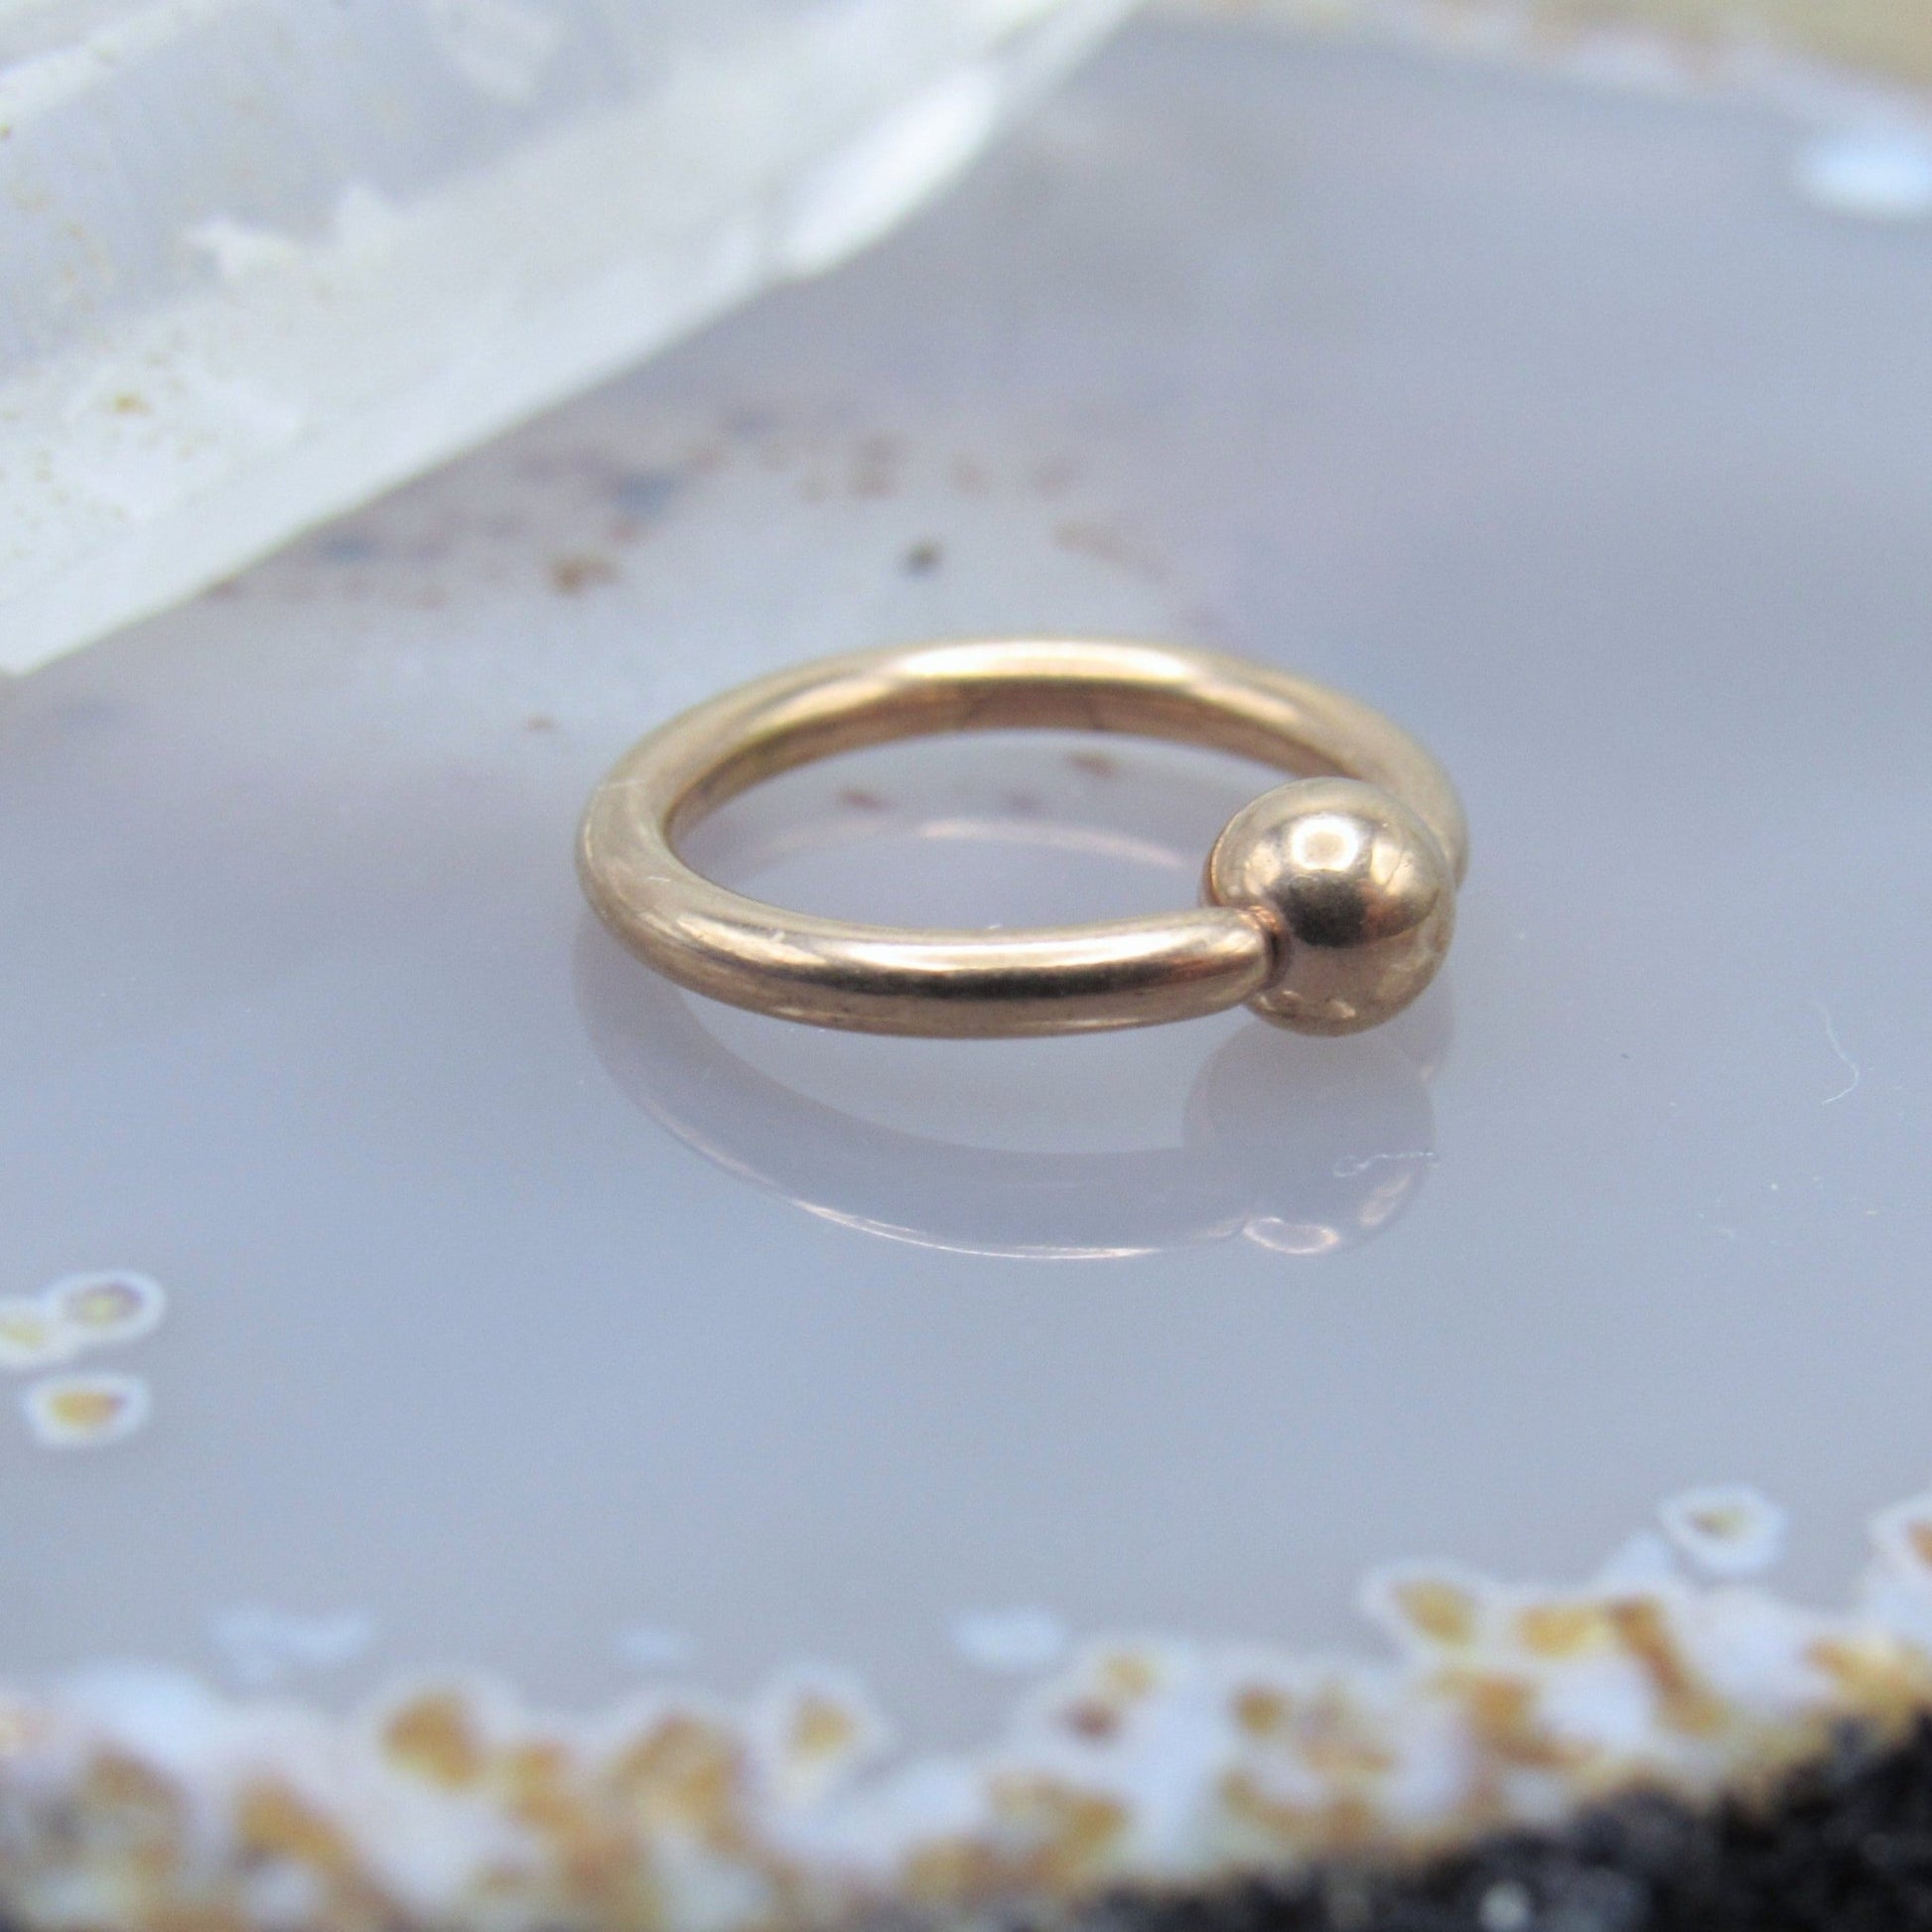 Rose gold fixed bead ring 16g 5/16" diameter ear helix earlobe cartilage piercing body jewelry hoop 3mm bead - Siren Body Jewelry